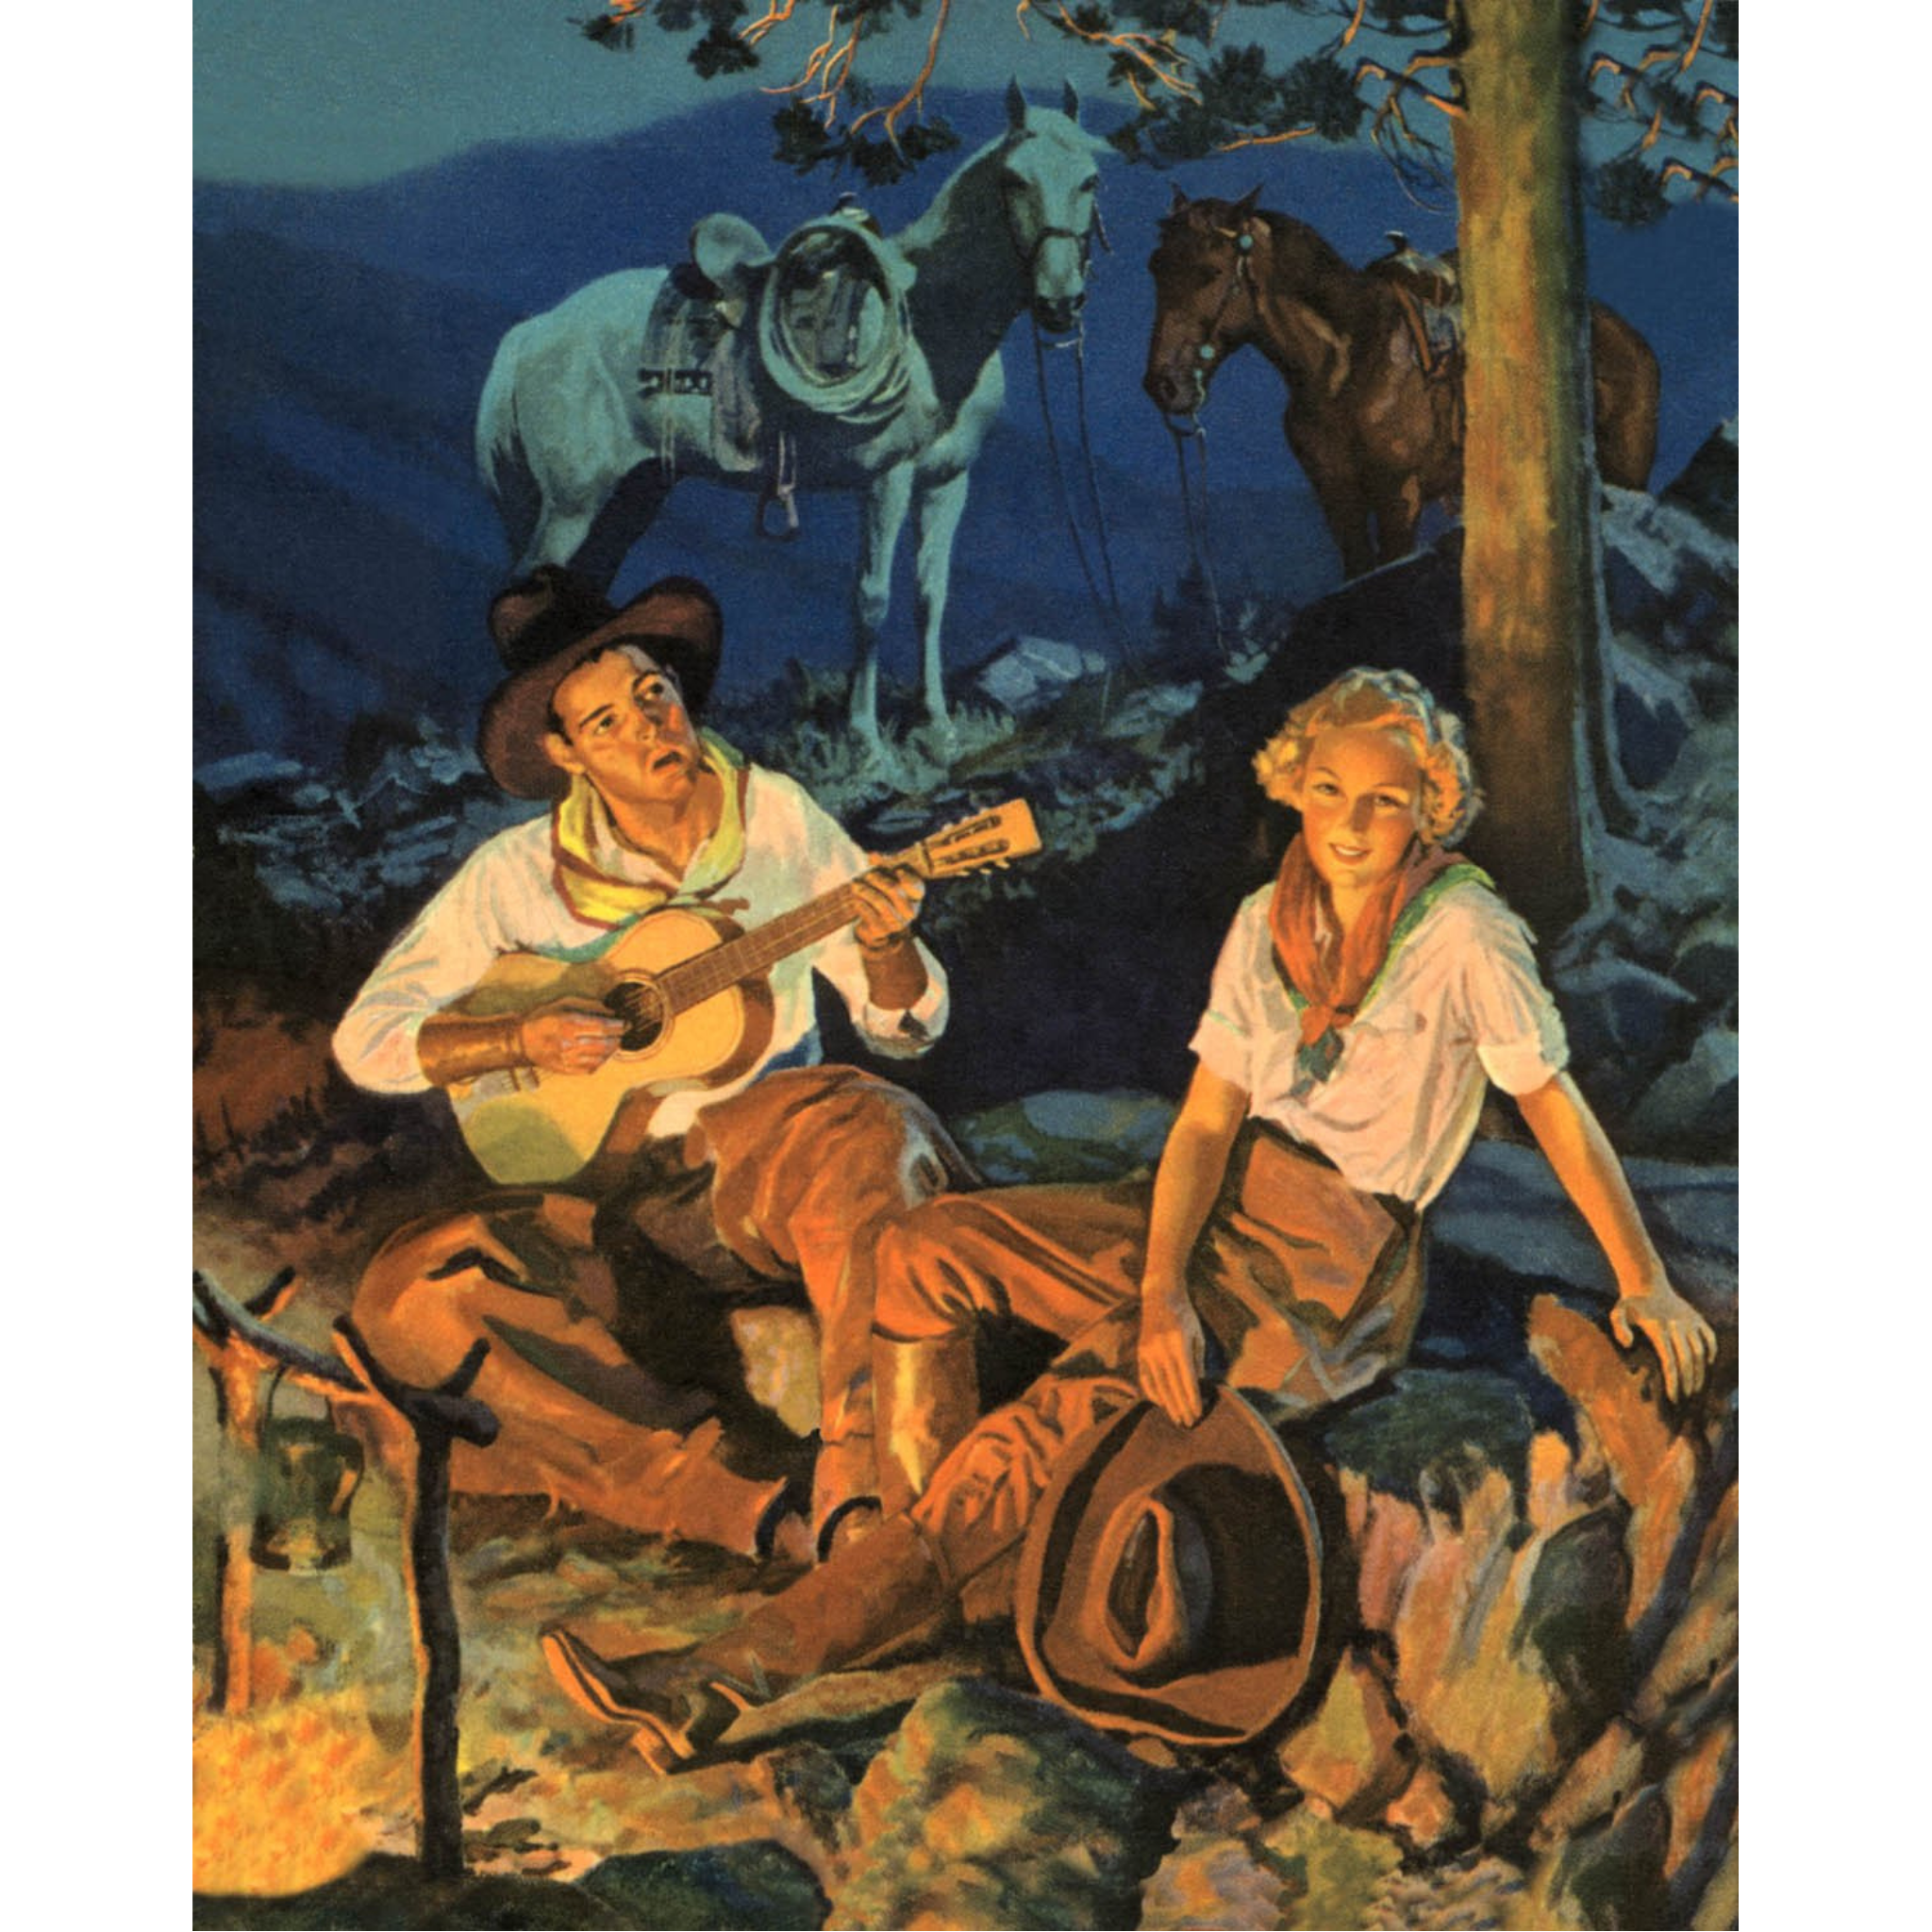 Cowboy Serenading Cowgirl at Campfire - ca. 1935 Lithograph